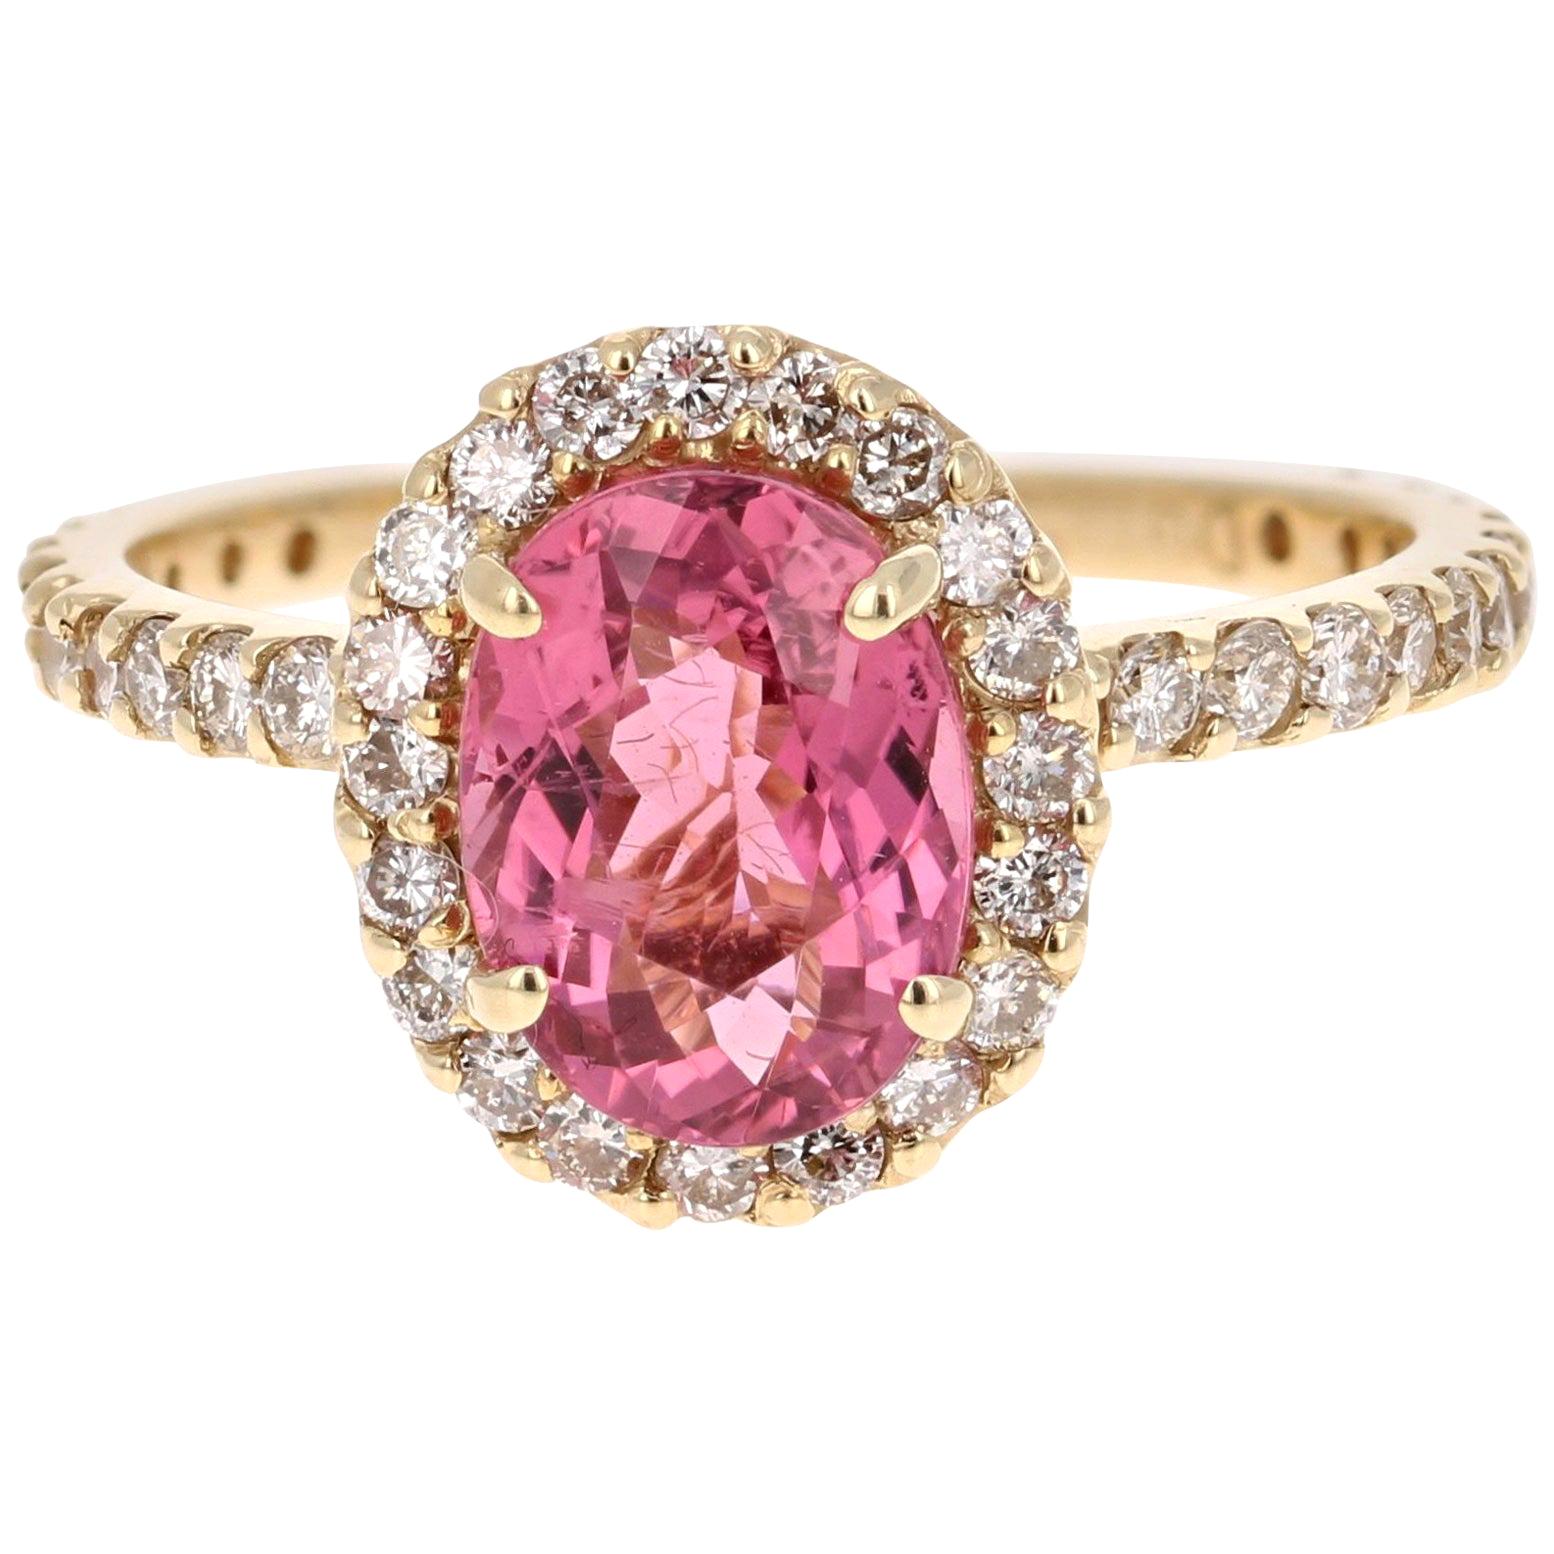 2.66 Carat Pink Tourmaline Diamond 14 Karat Yellow Gold Ring